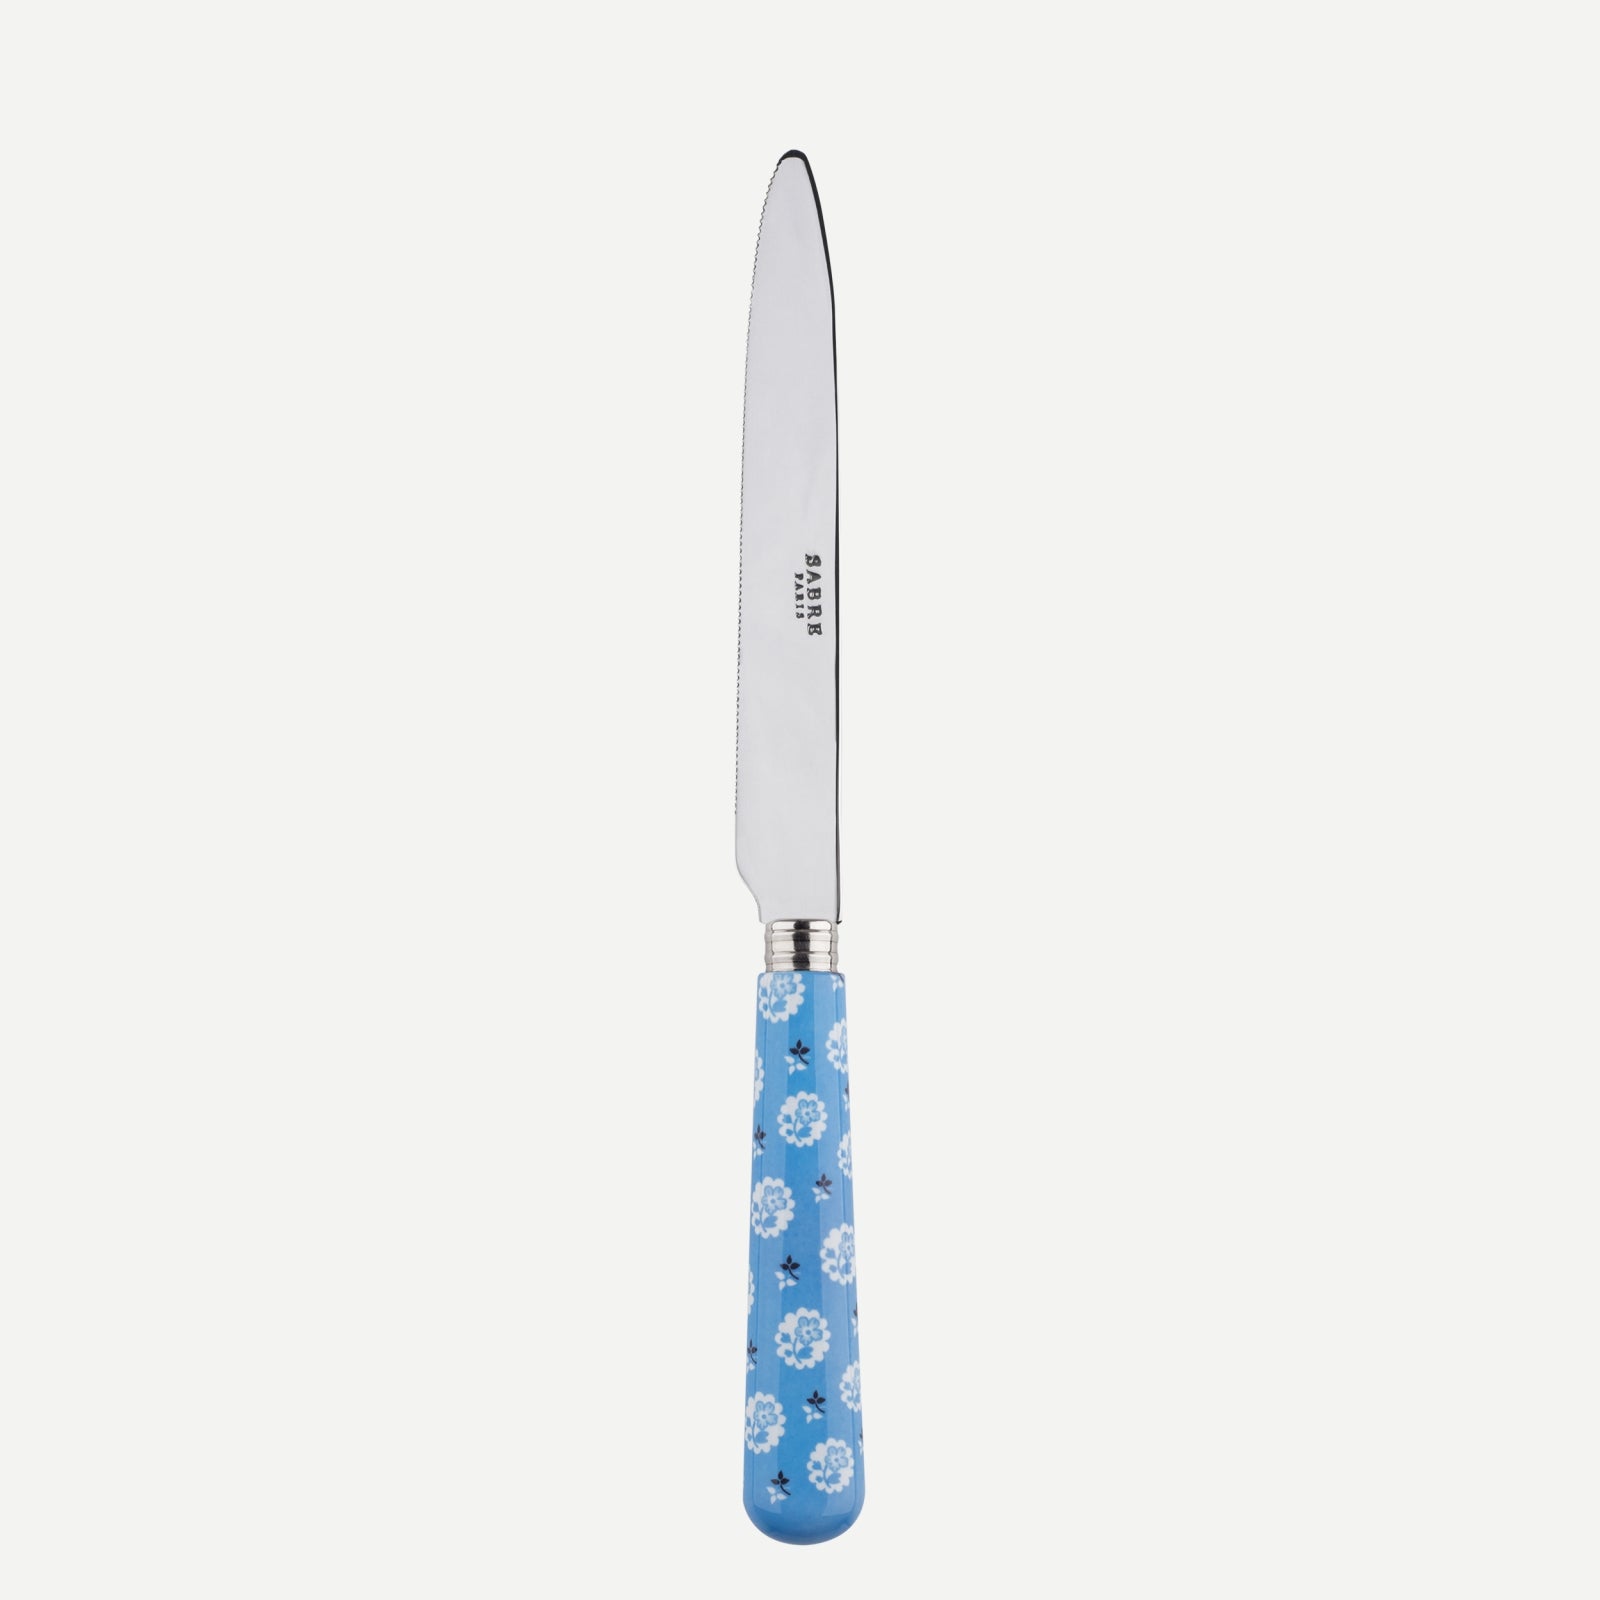 Serrated Dinner knife Blade - Provencal - Light blue